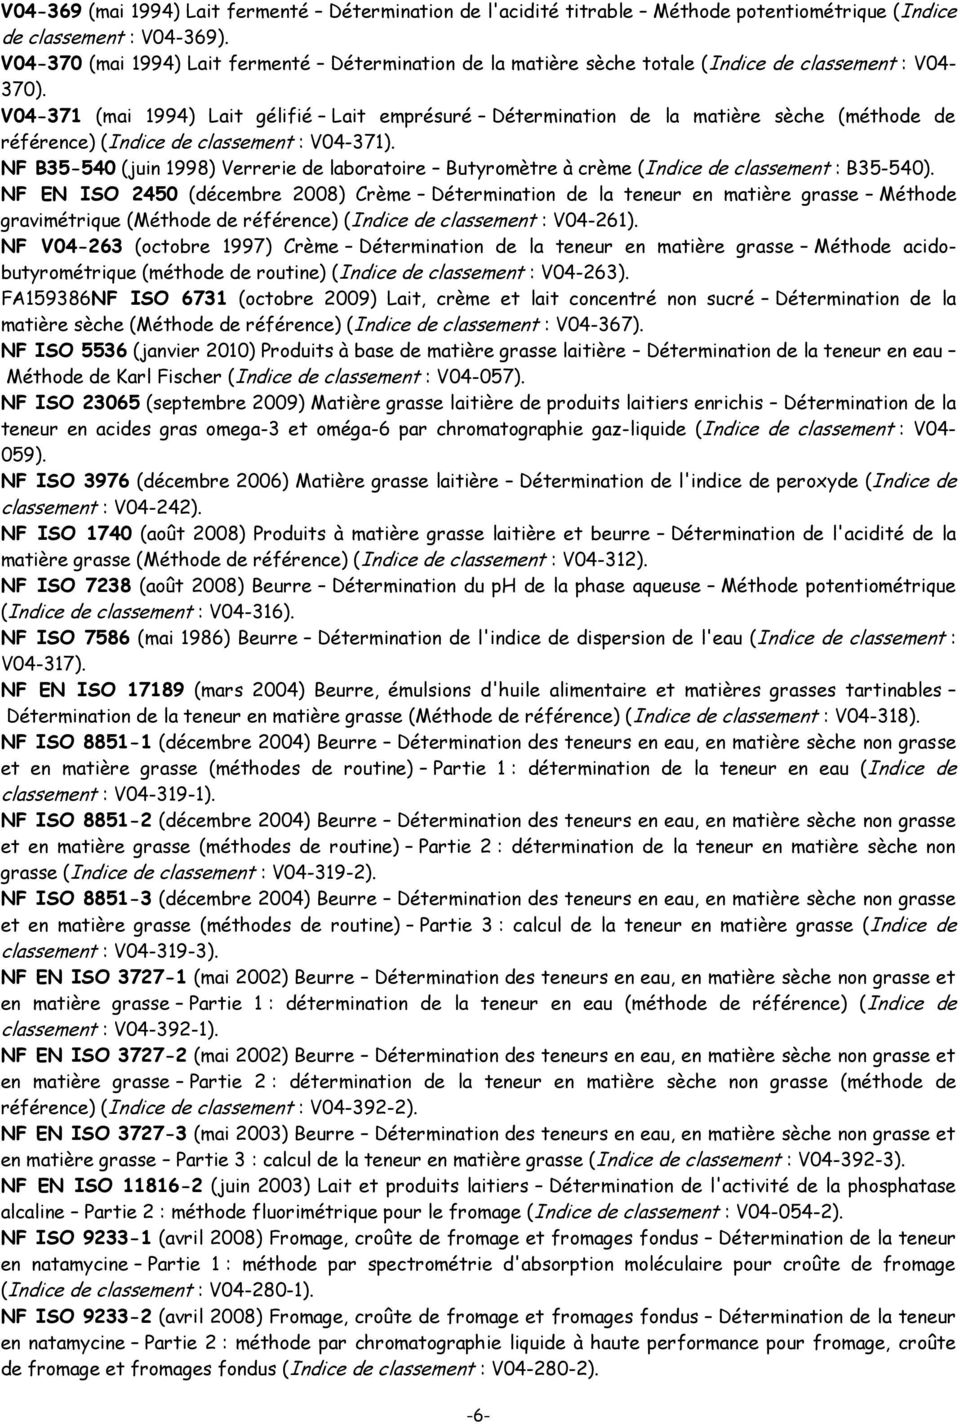 V04-371 (mai 1994) Lait gélifié Lait emprésuré Détermination de la matière sèche (méthode de référence) (Indice de classement : V04-371).